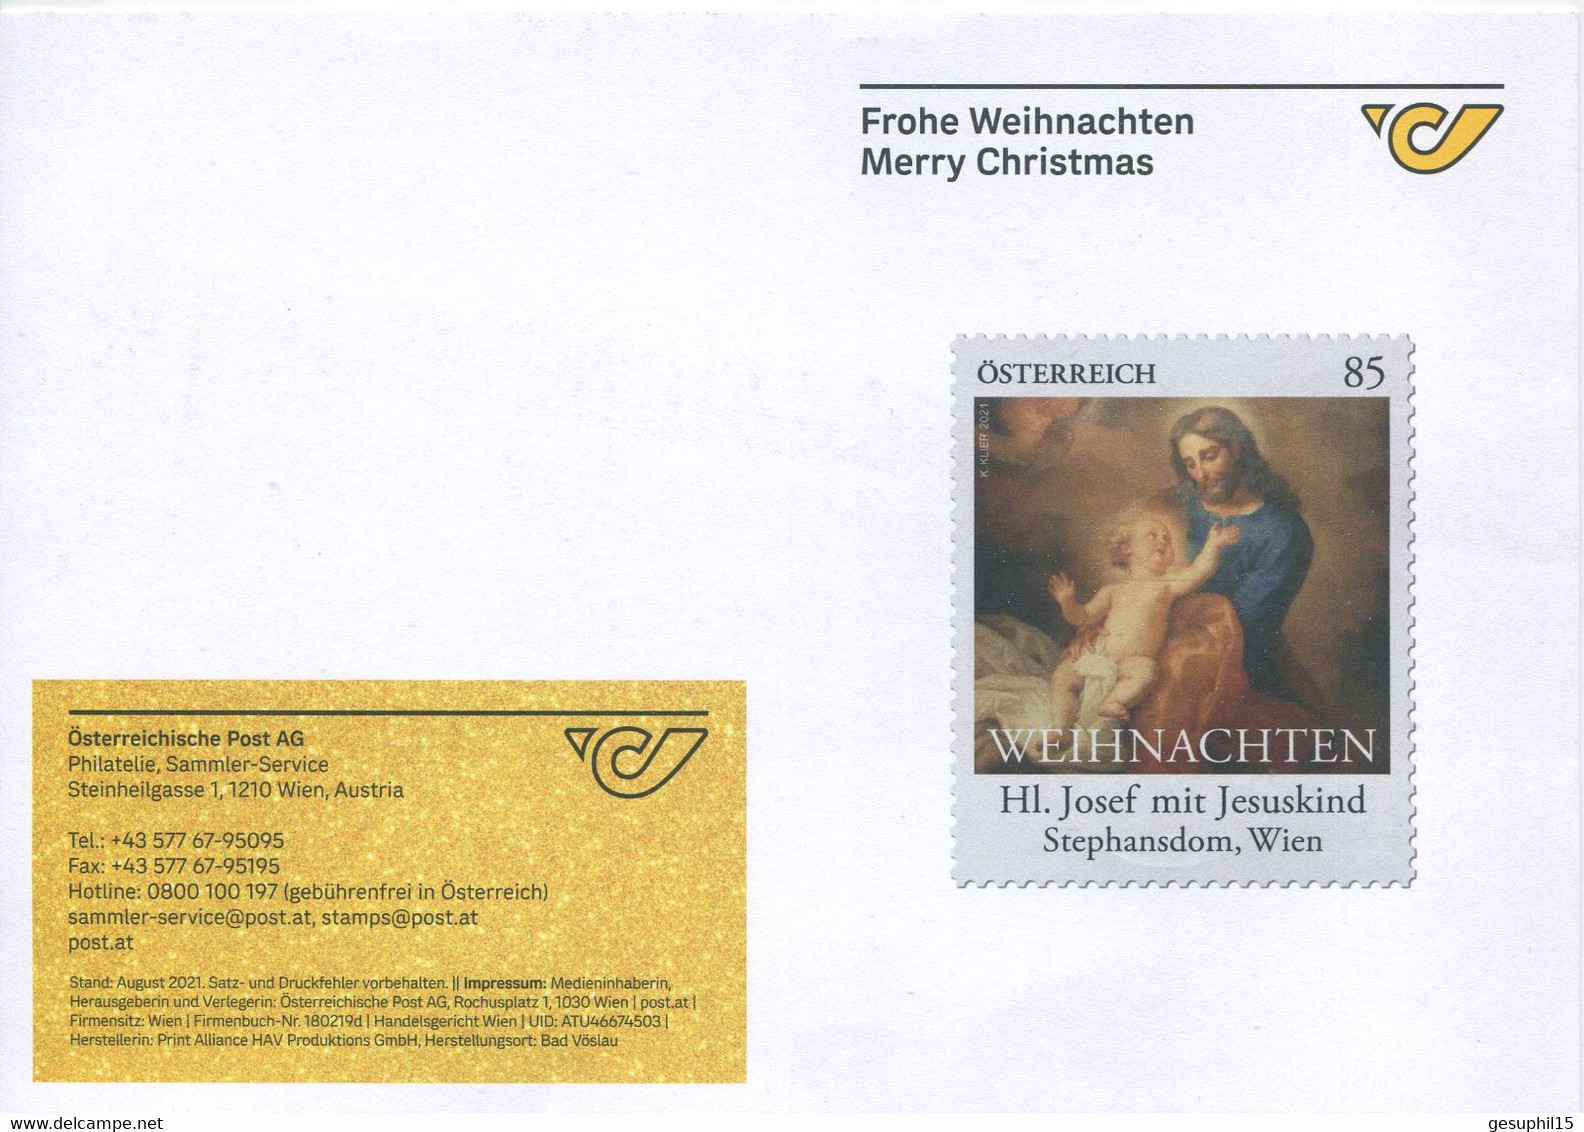 ÖSTERREICH / Faltkarte Österreichische Post / Frohe Weihnachten 2021 - Covers & Documents